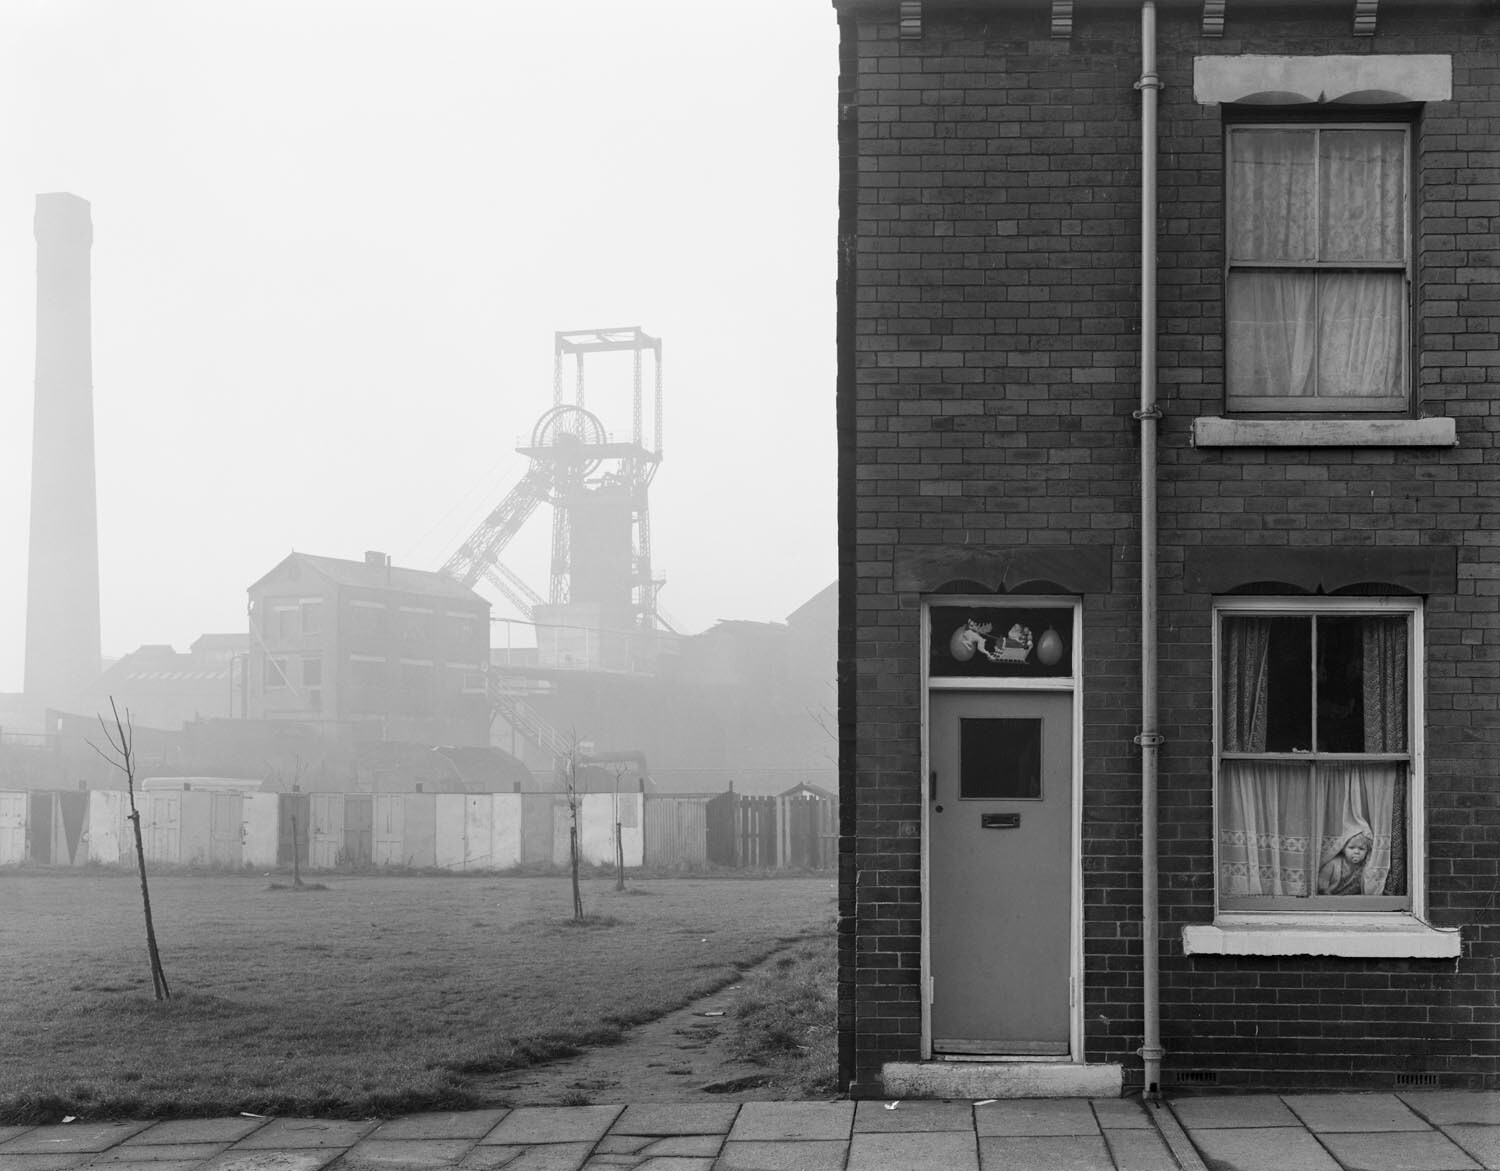 Угольная шахта и жилищное строительство, Каслфорд, Йоркшир. Фотограф Крис Киллип